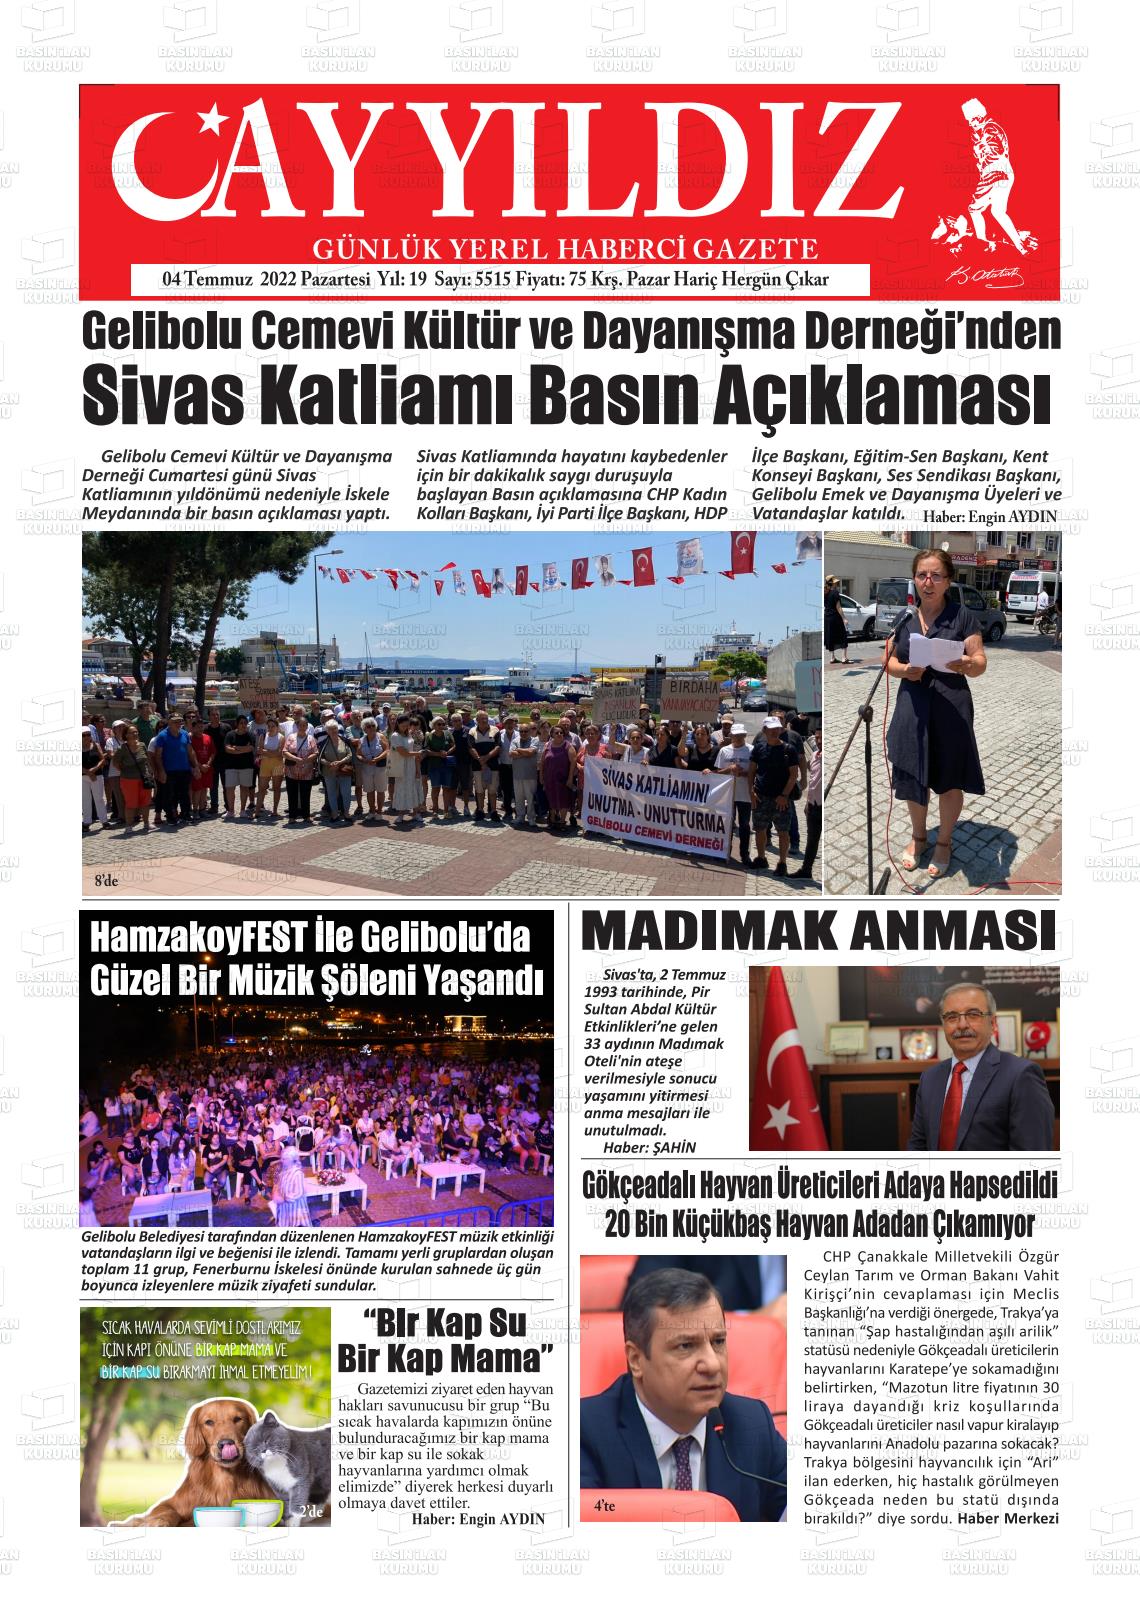 04 Temmuz 2022 Ayyıldız Gazete Manşeti